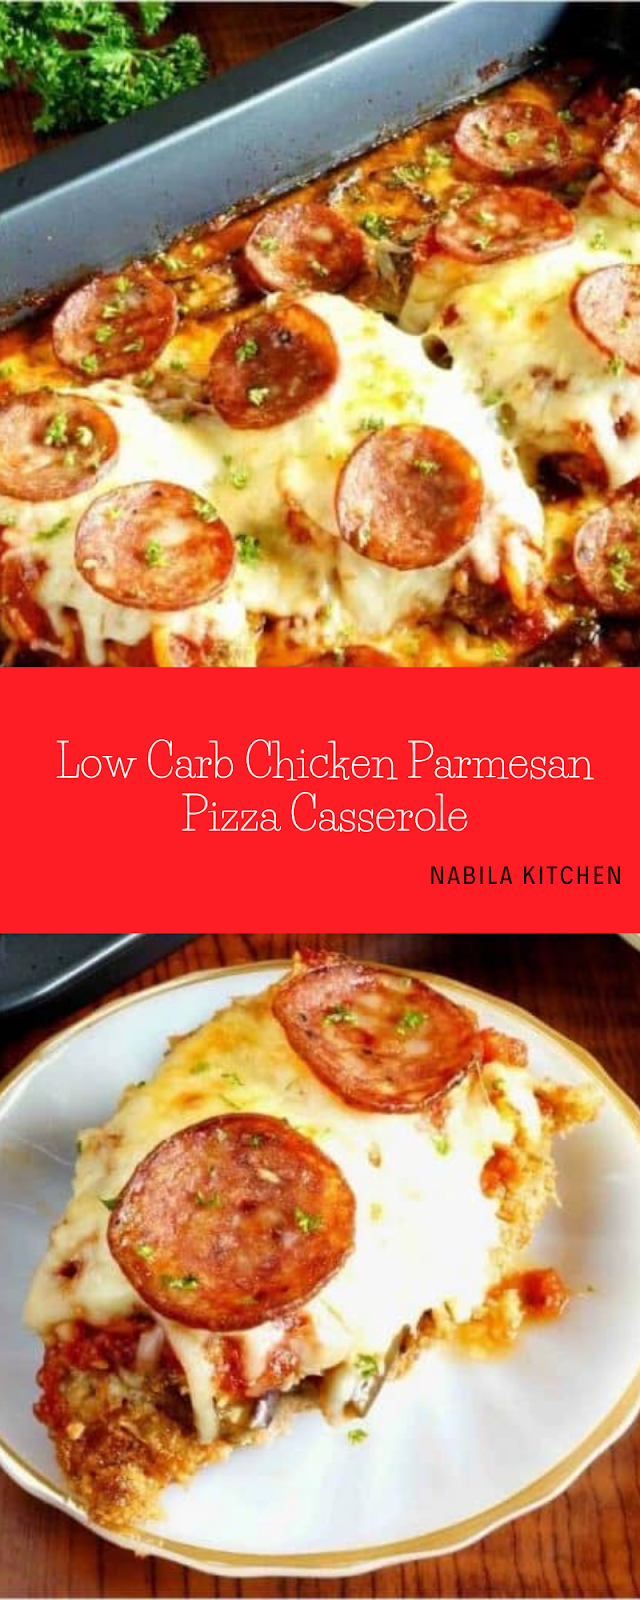 Low Carb Chicken Parmesan Pizza Casserole